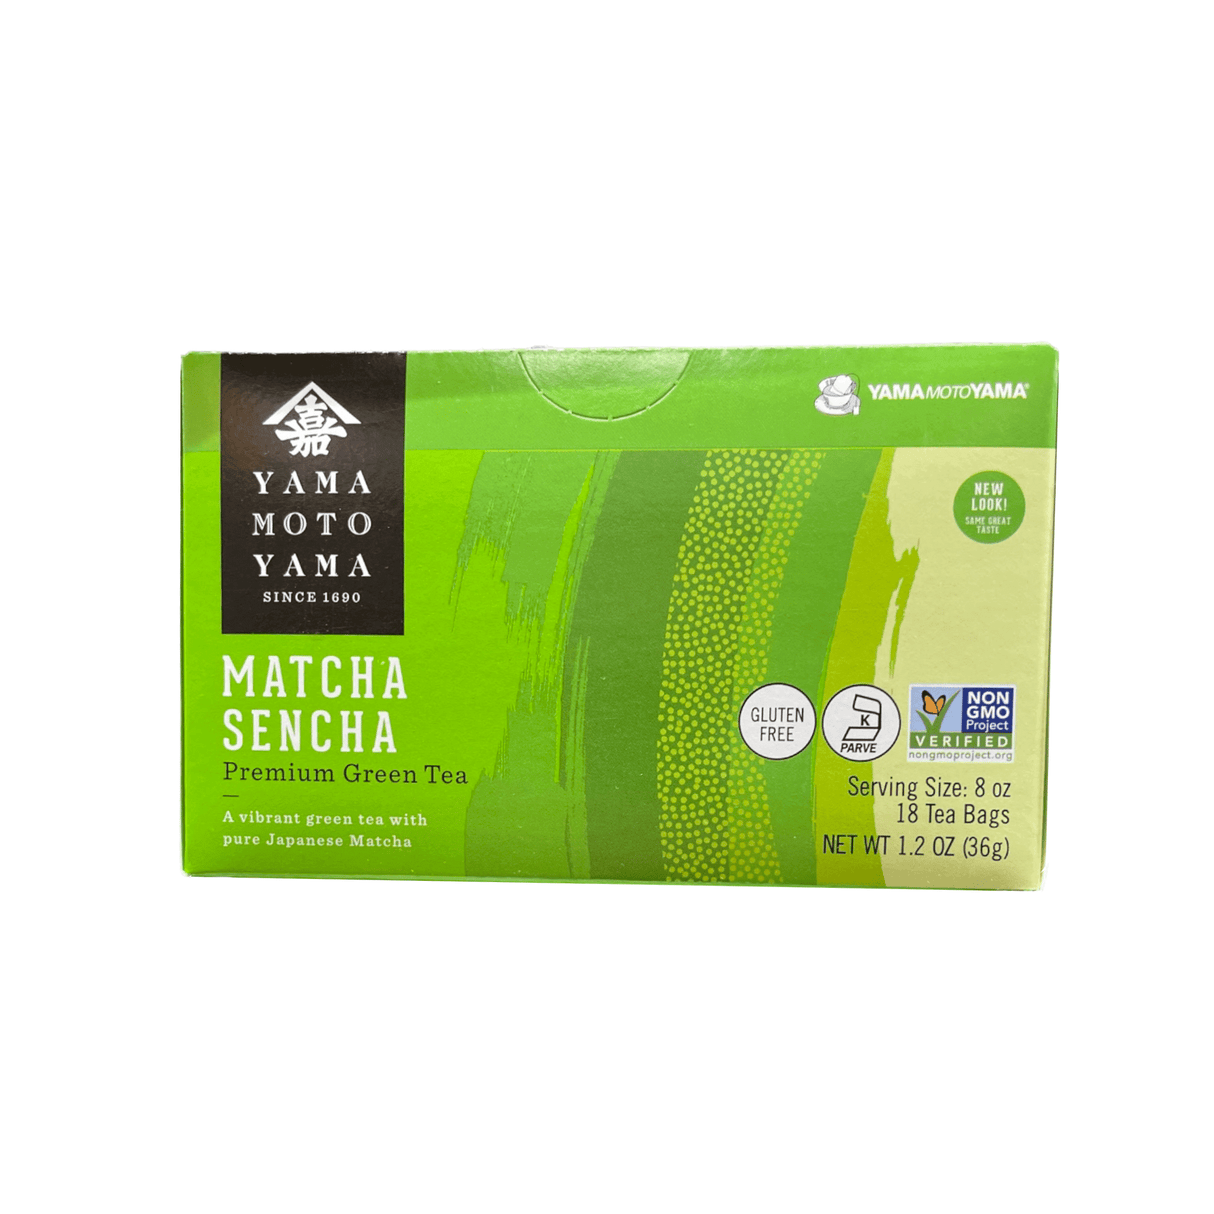 Yamamotoyama Organic Marcha Sencha Premium Green Tea